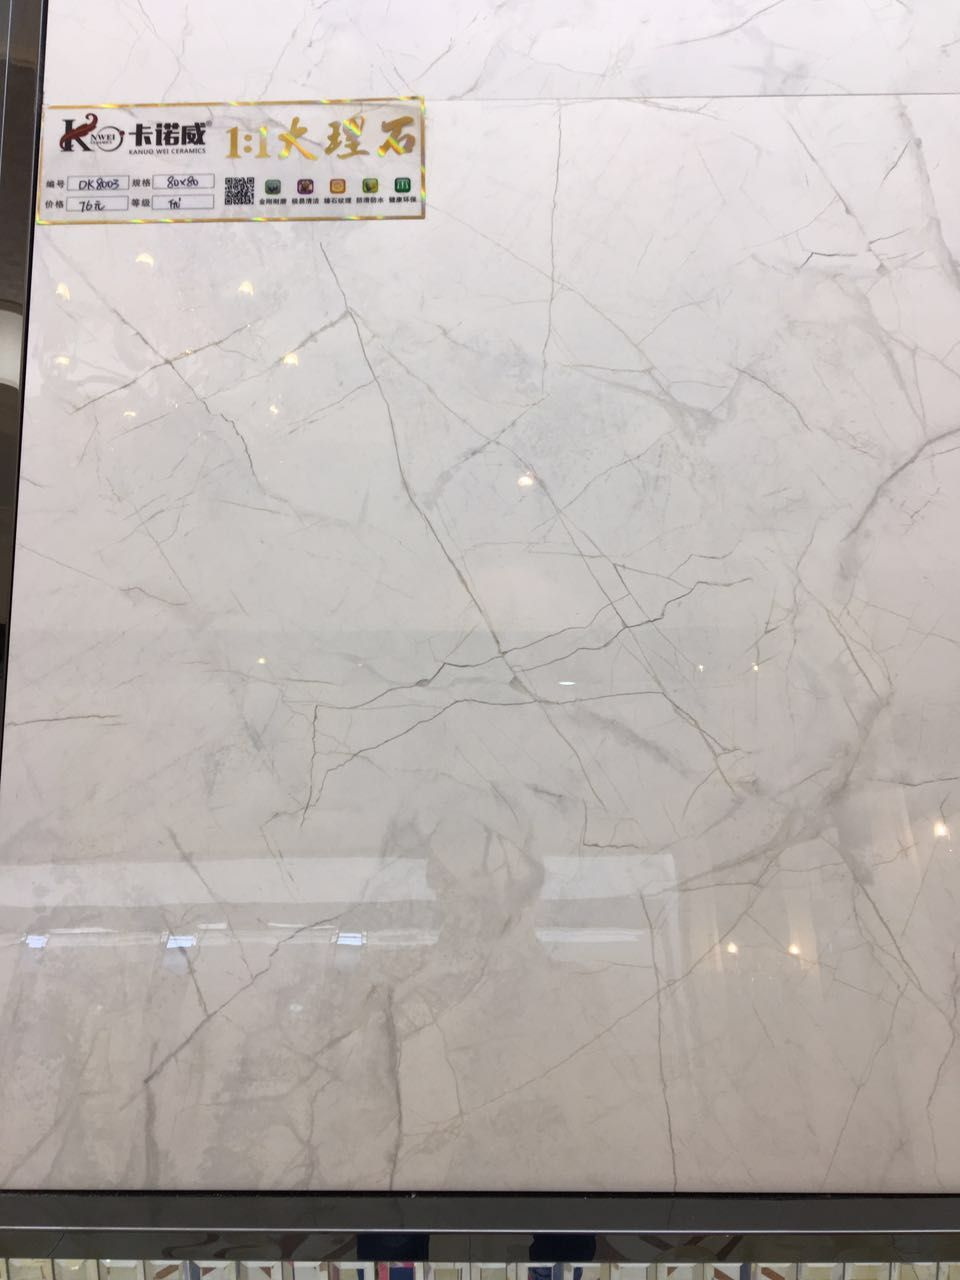 Glazed Porcelain Floor Tile Copy Marble for Home Decoration (600X600mm)